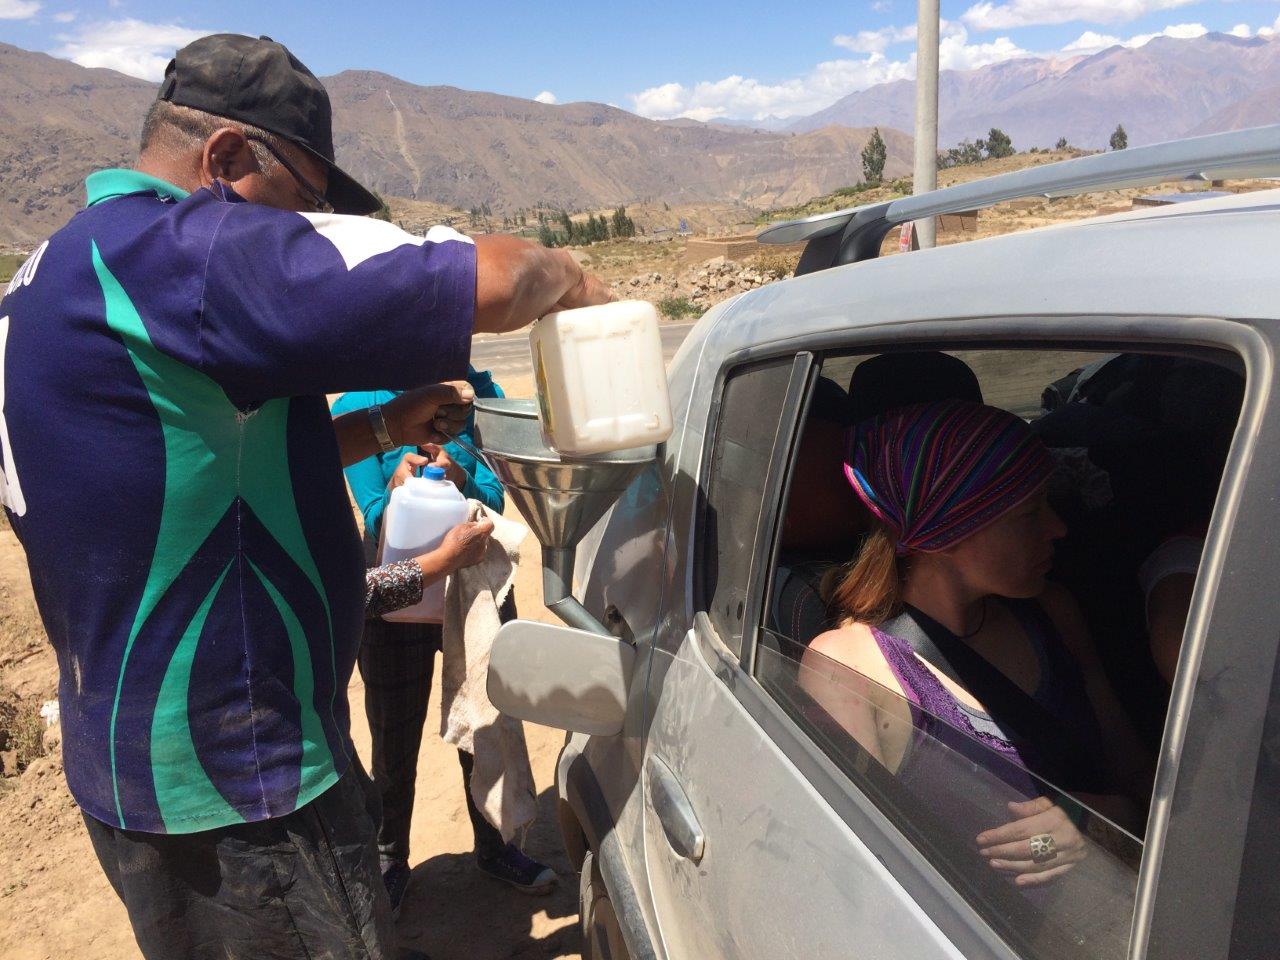 Abastecendo o carro em Cabanaconde, no Peru.